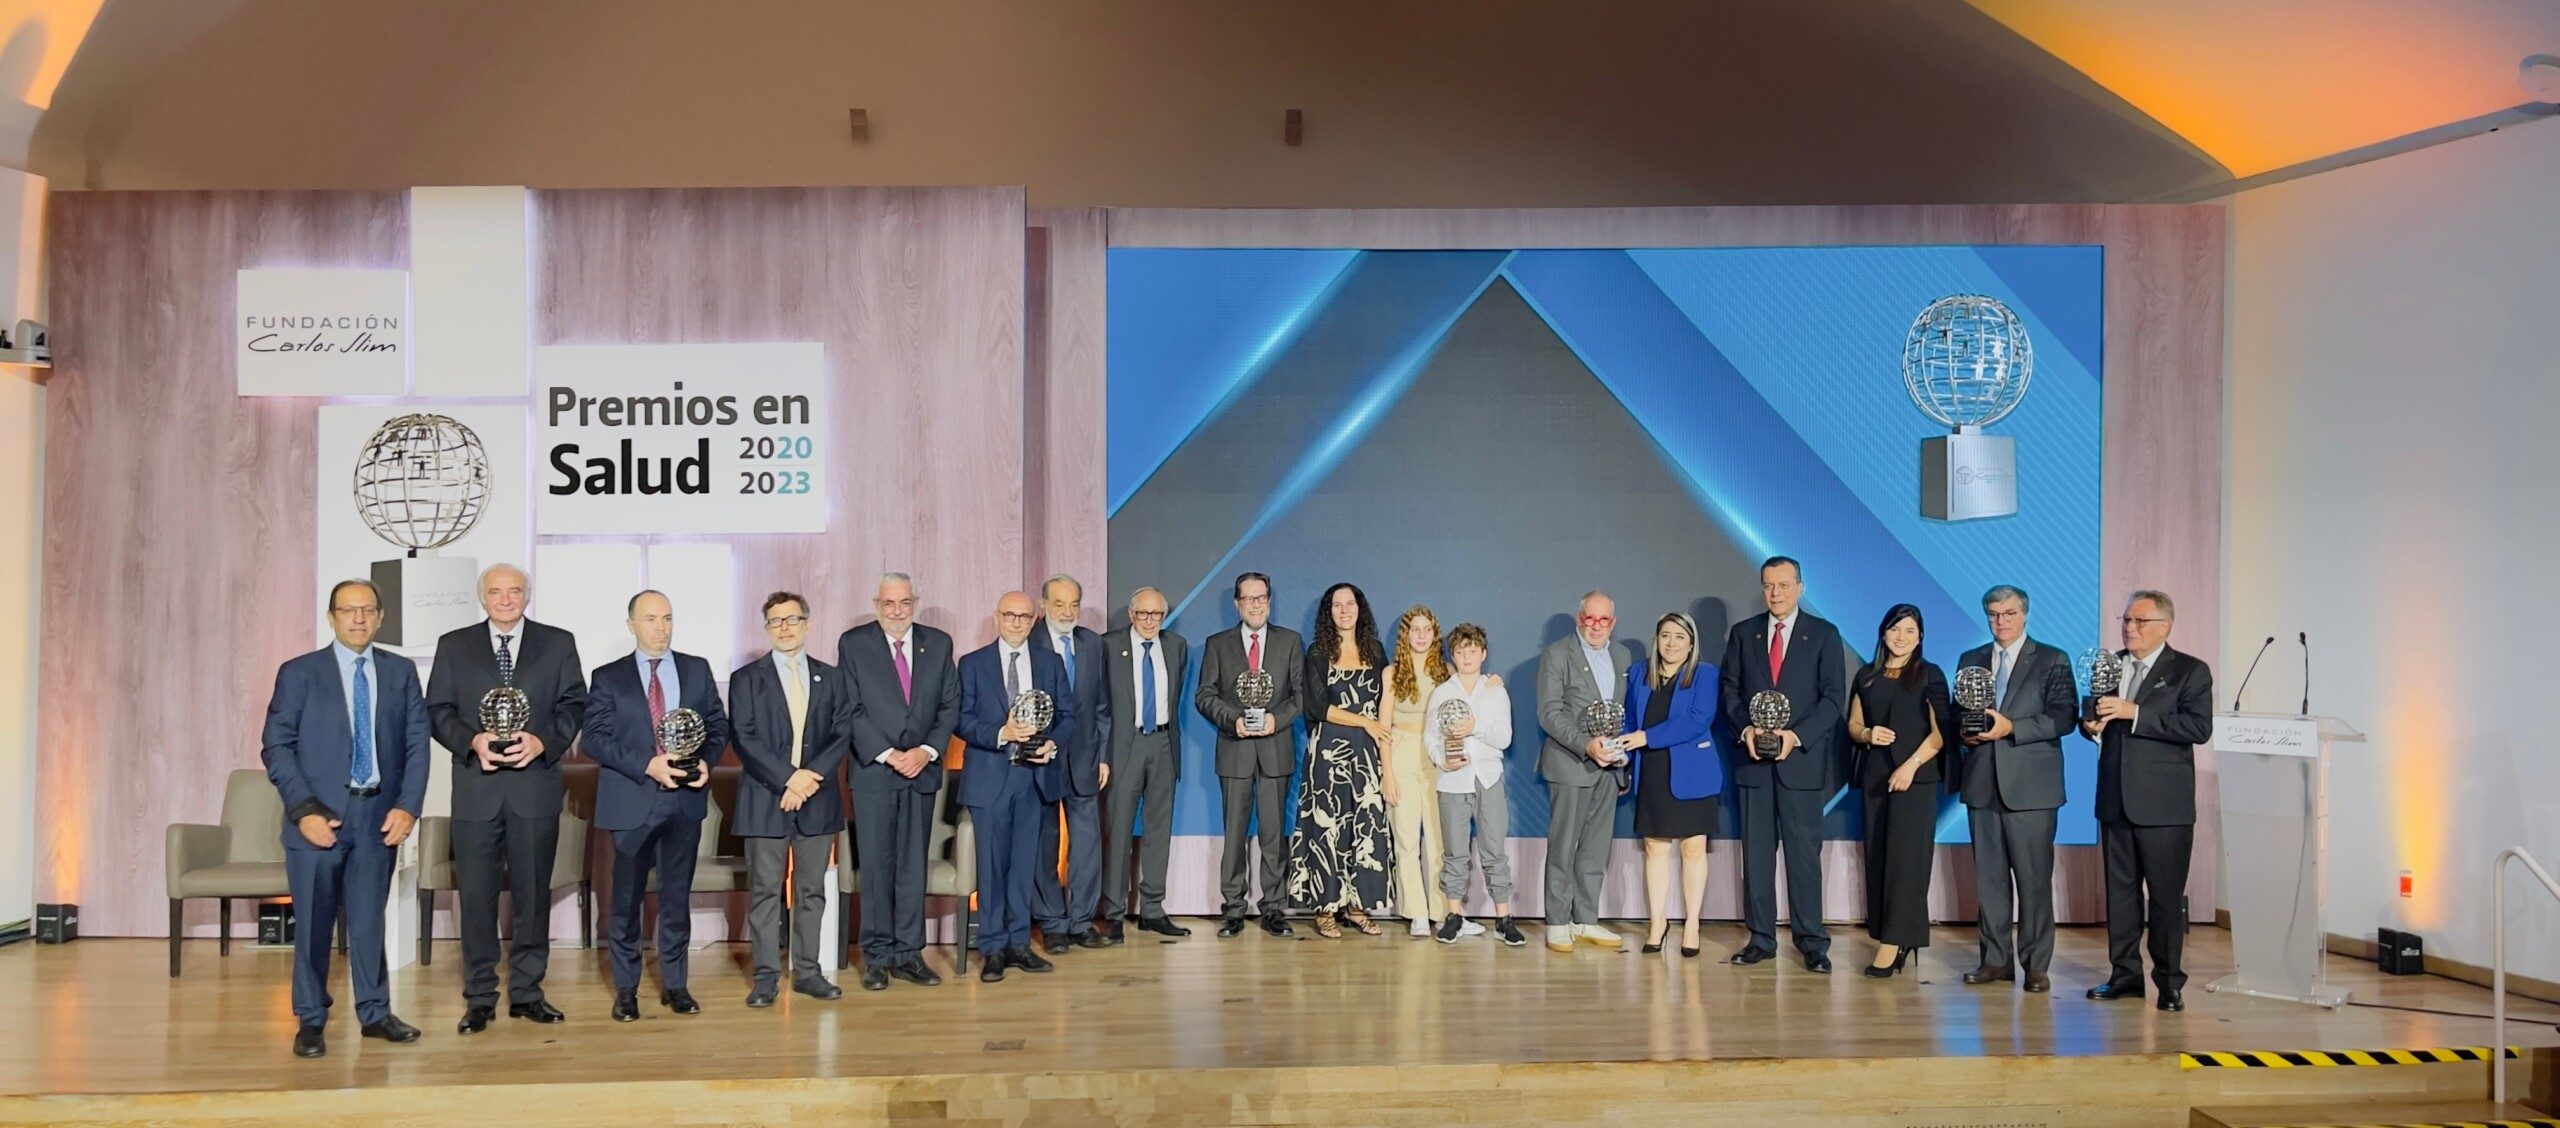 Fundación Carlos Slim Entrega Premios Y Destaca Acciones Durante La Pandemia Plenilunia 3870